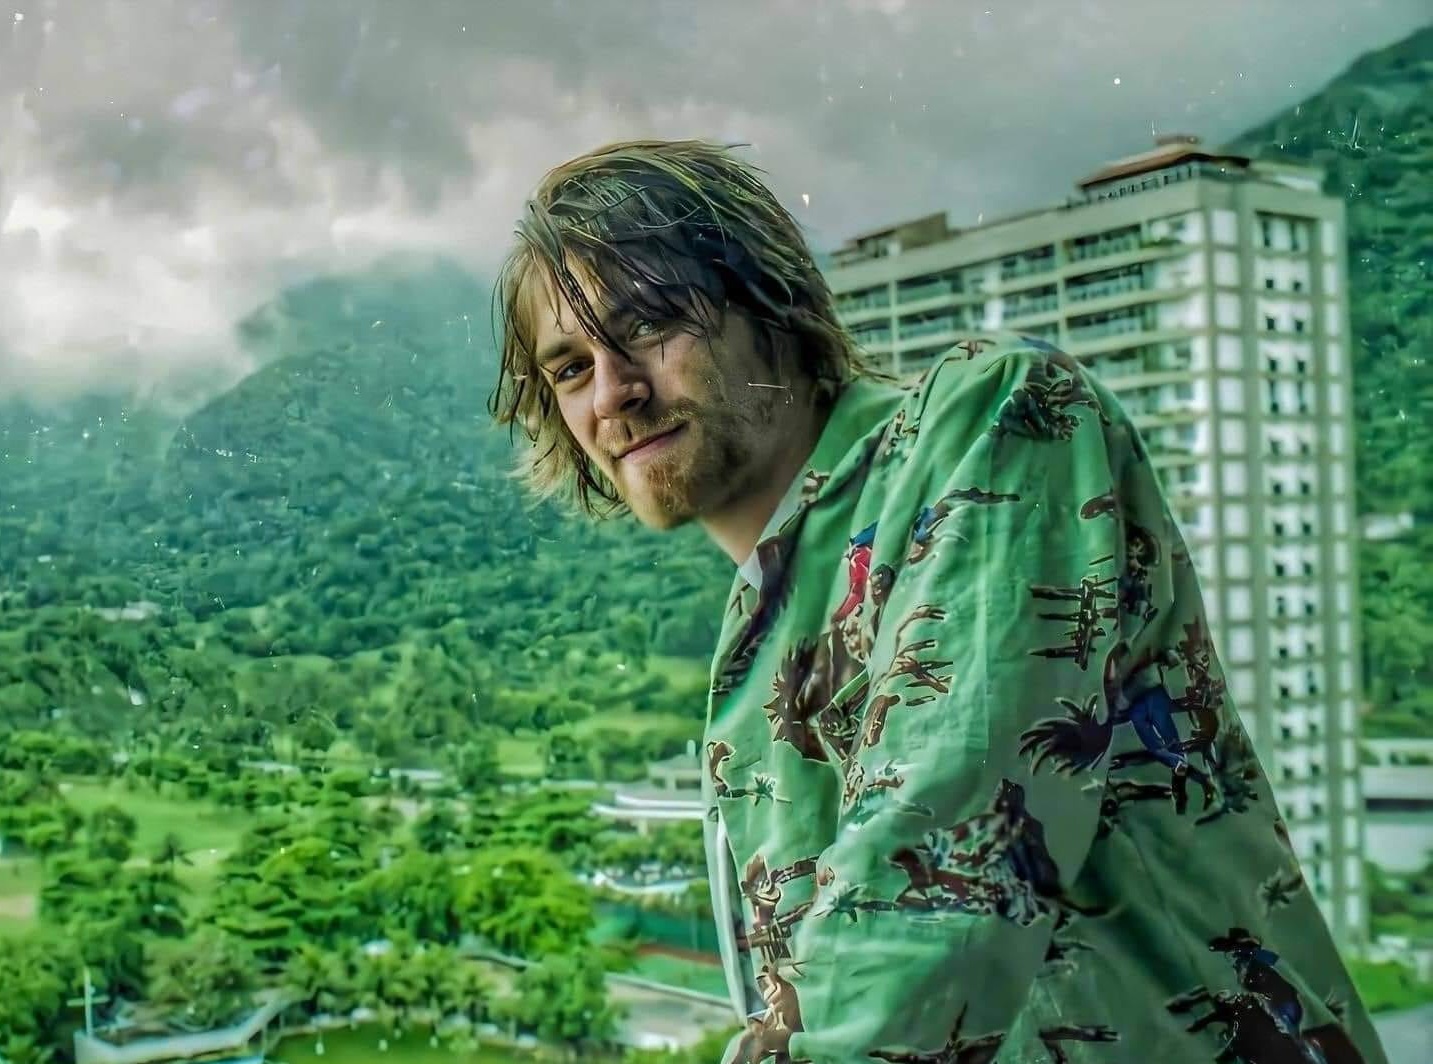 Νέο ντοκιμαντέρ για τον Kurt Cobain ανακοίνωσε το BBC